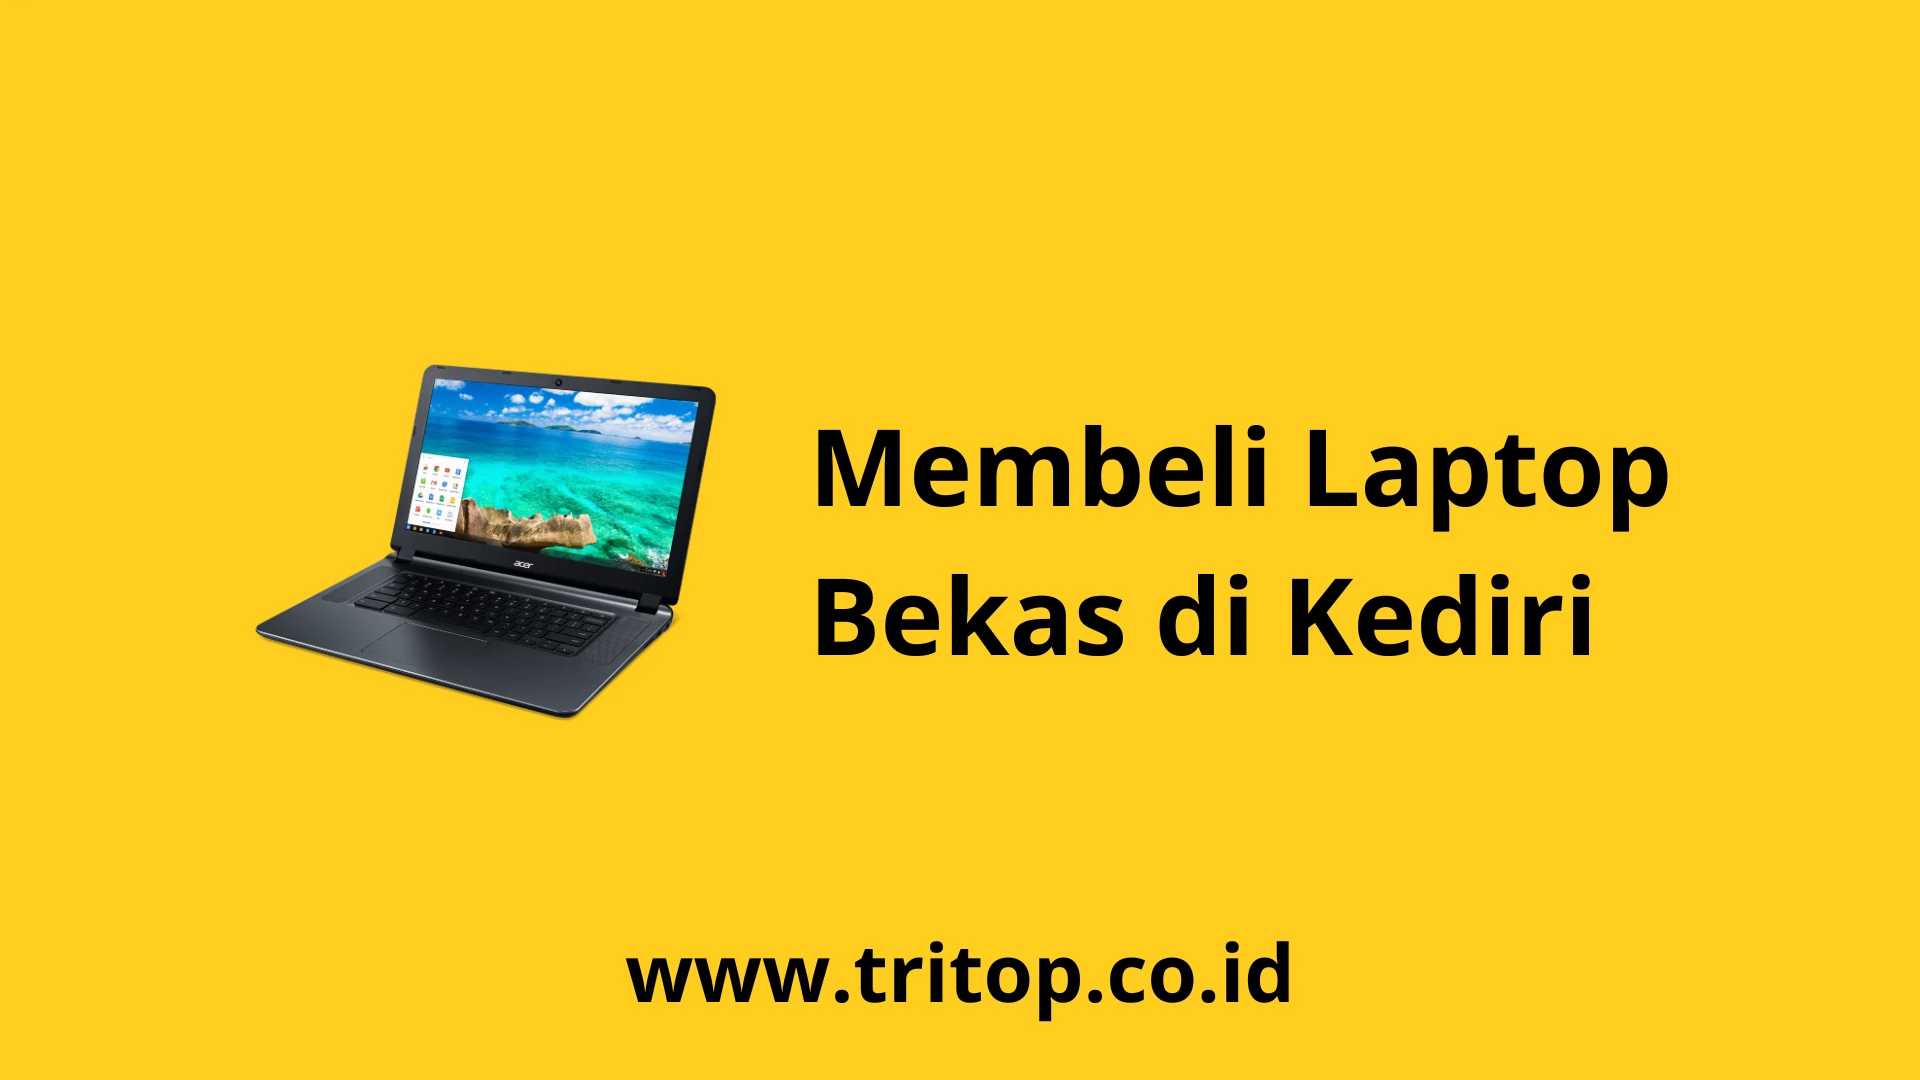 Laptop Bekas Kediri Tritop.co.id